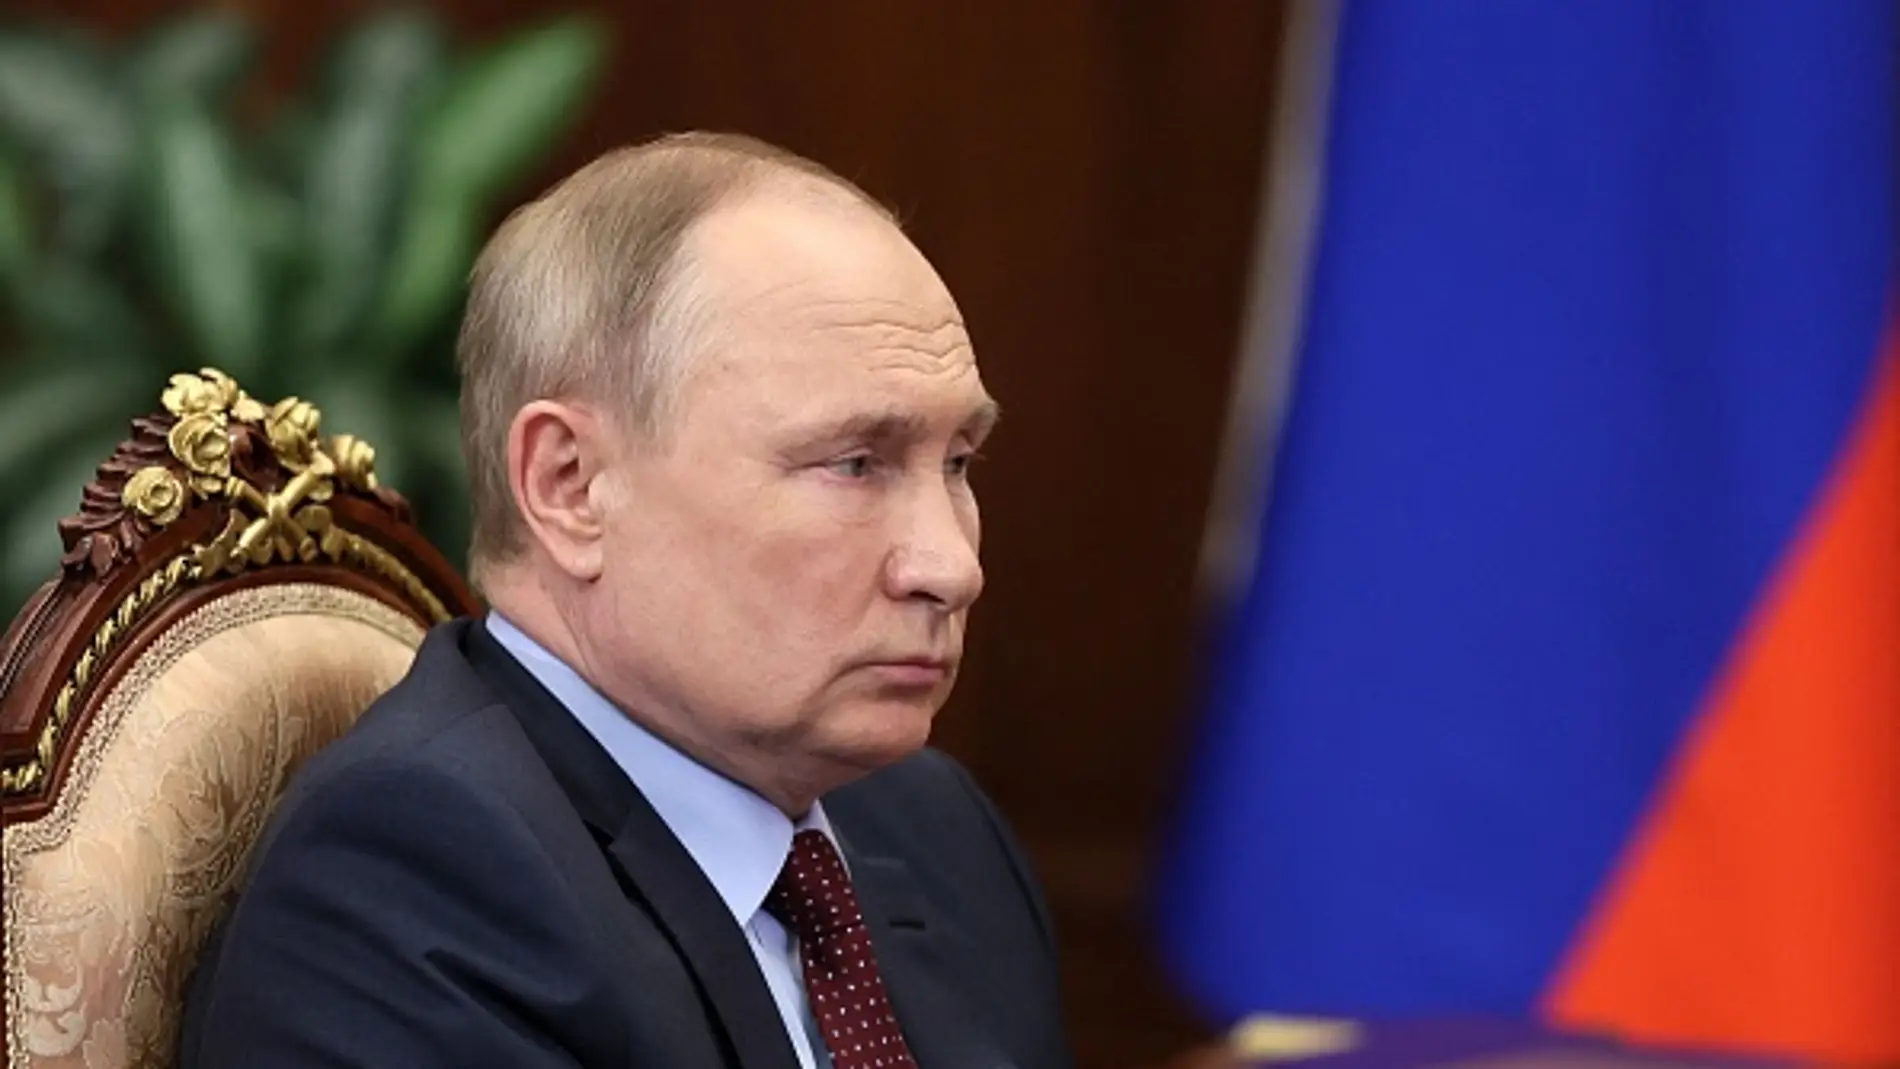 Varios diputados municipales rusos piden la destitución de Putin por "alta traición" al iniciar la guerra